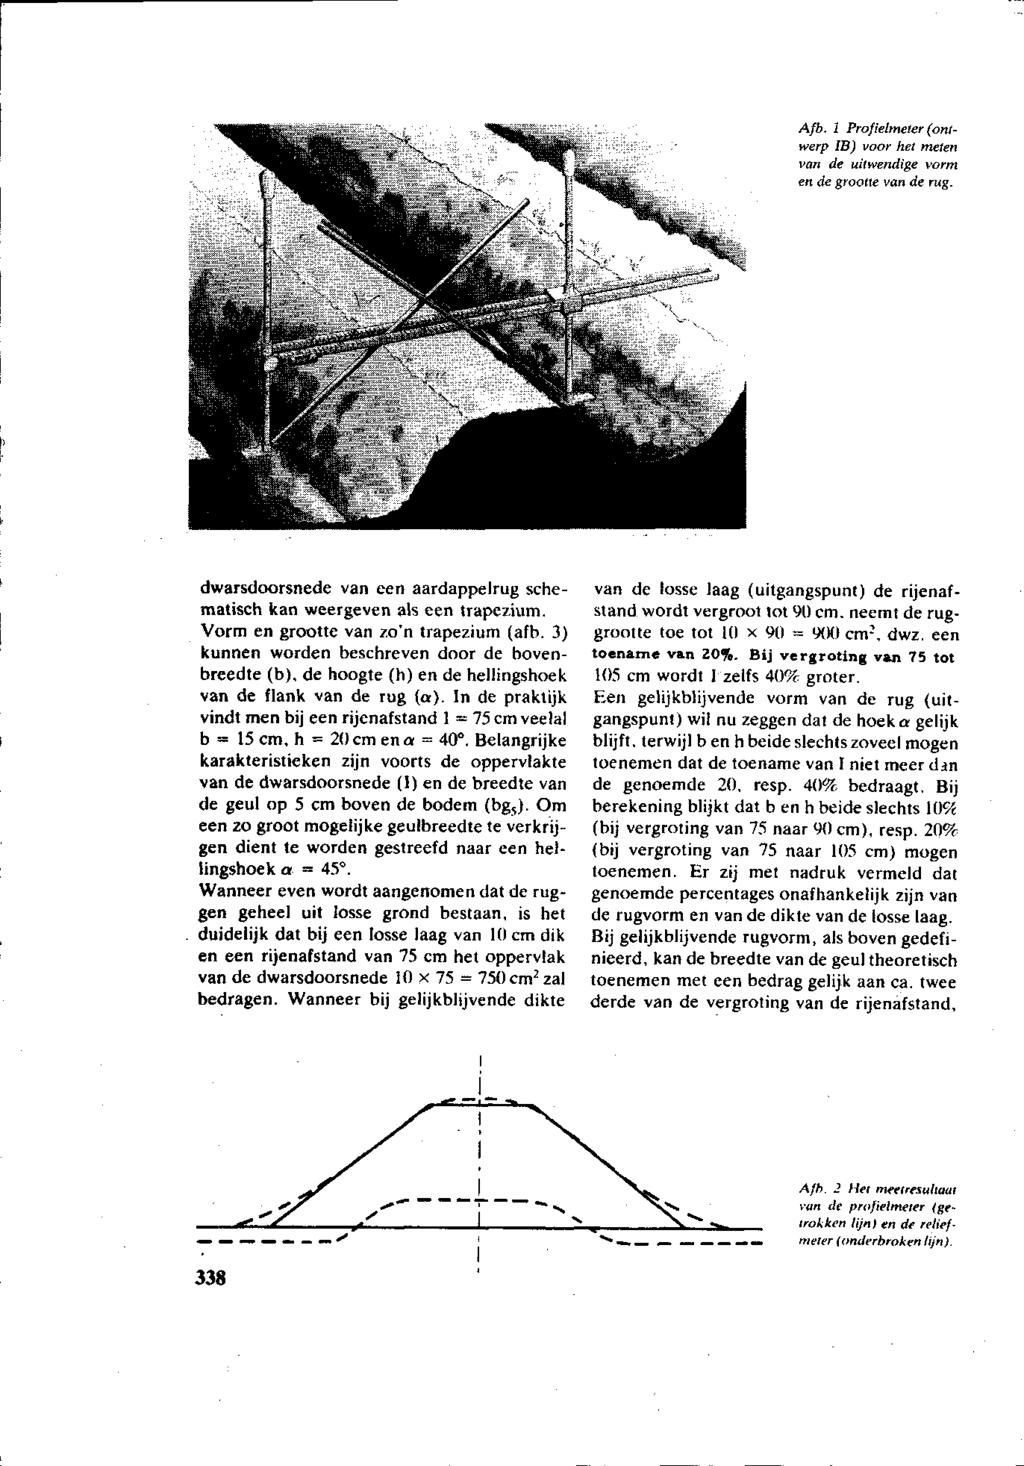 Afb. 1 Profielmeter (ontwerp IB) voor het meien van de uitwendige vorm en de grootte van de rug. dwarsdoorsnede van een aardappelrug schematisch kan weergeven als een trapezium.